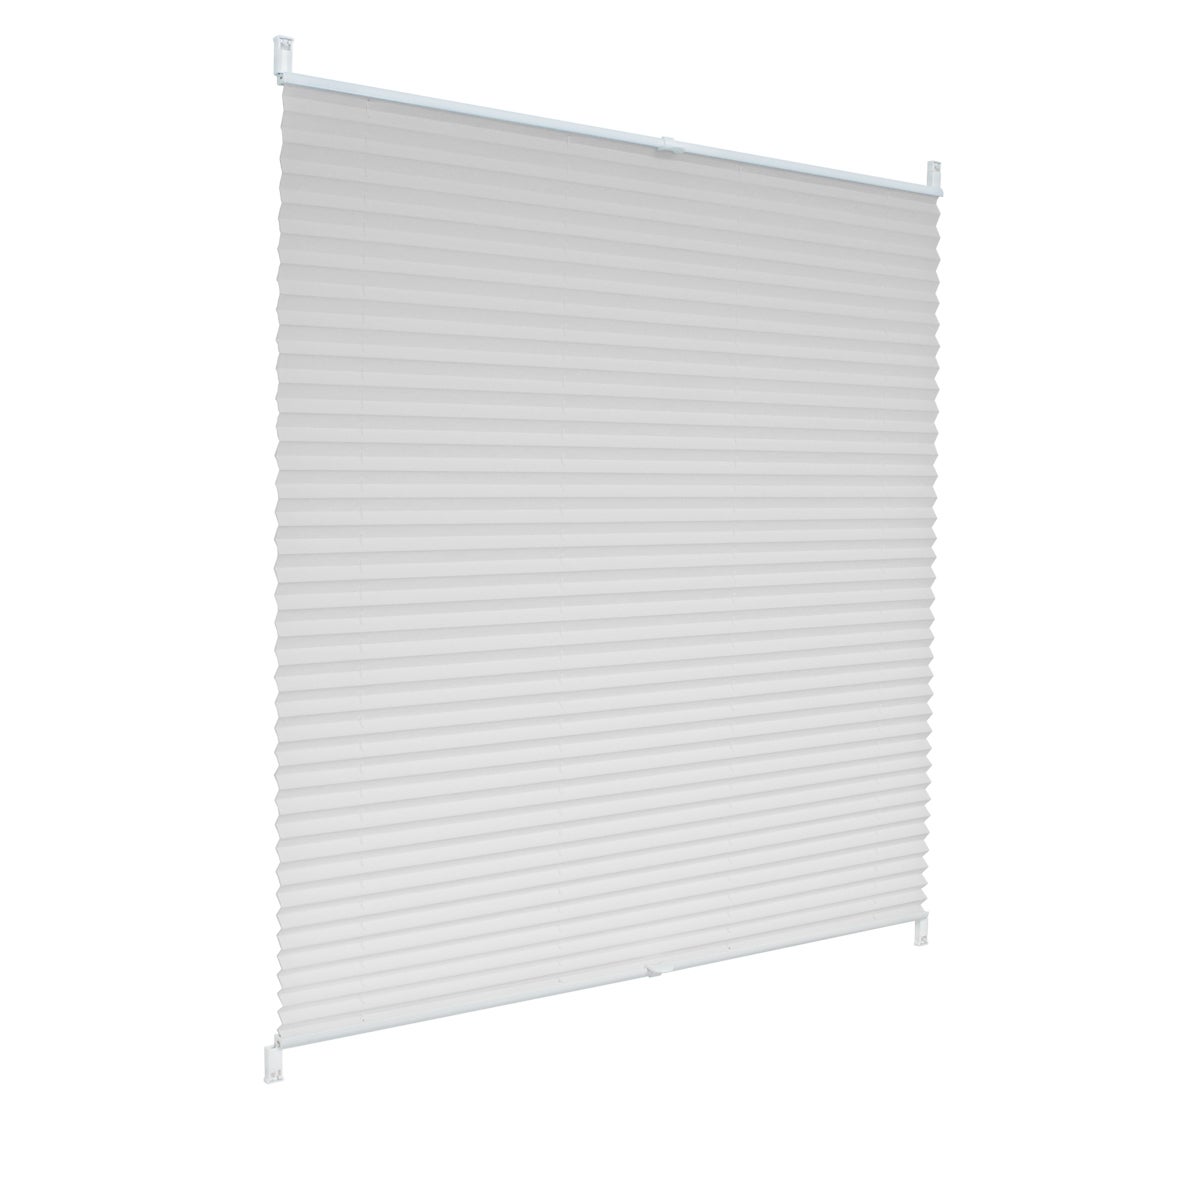 ECD Germany Plissee 55 x 100 cm - Weiß - Klemmfix - EasyFix - ohne Bohren - Sonnen- und Sichtschutz - für Fenster und Tür - inkl. Befestigungsmaterial - Jalousie Faltrollo Fensterrollo Rollo